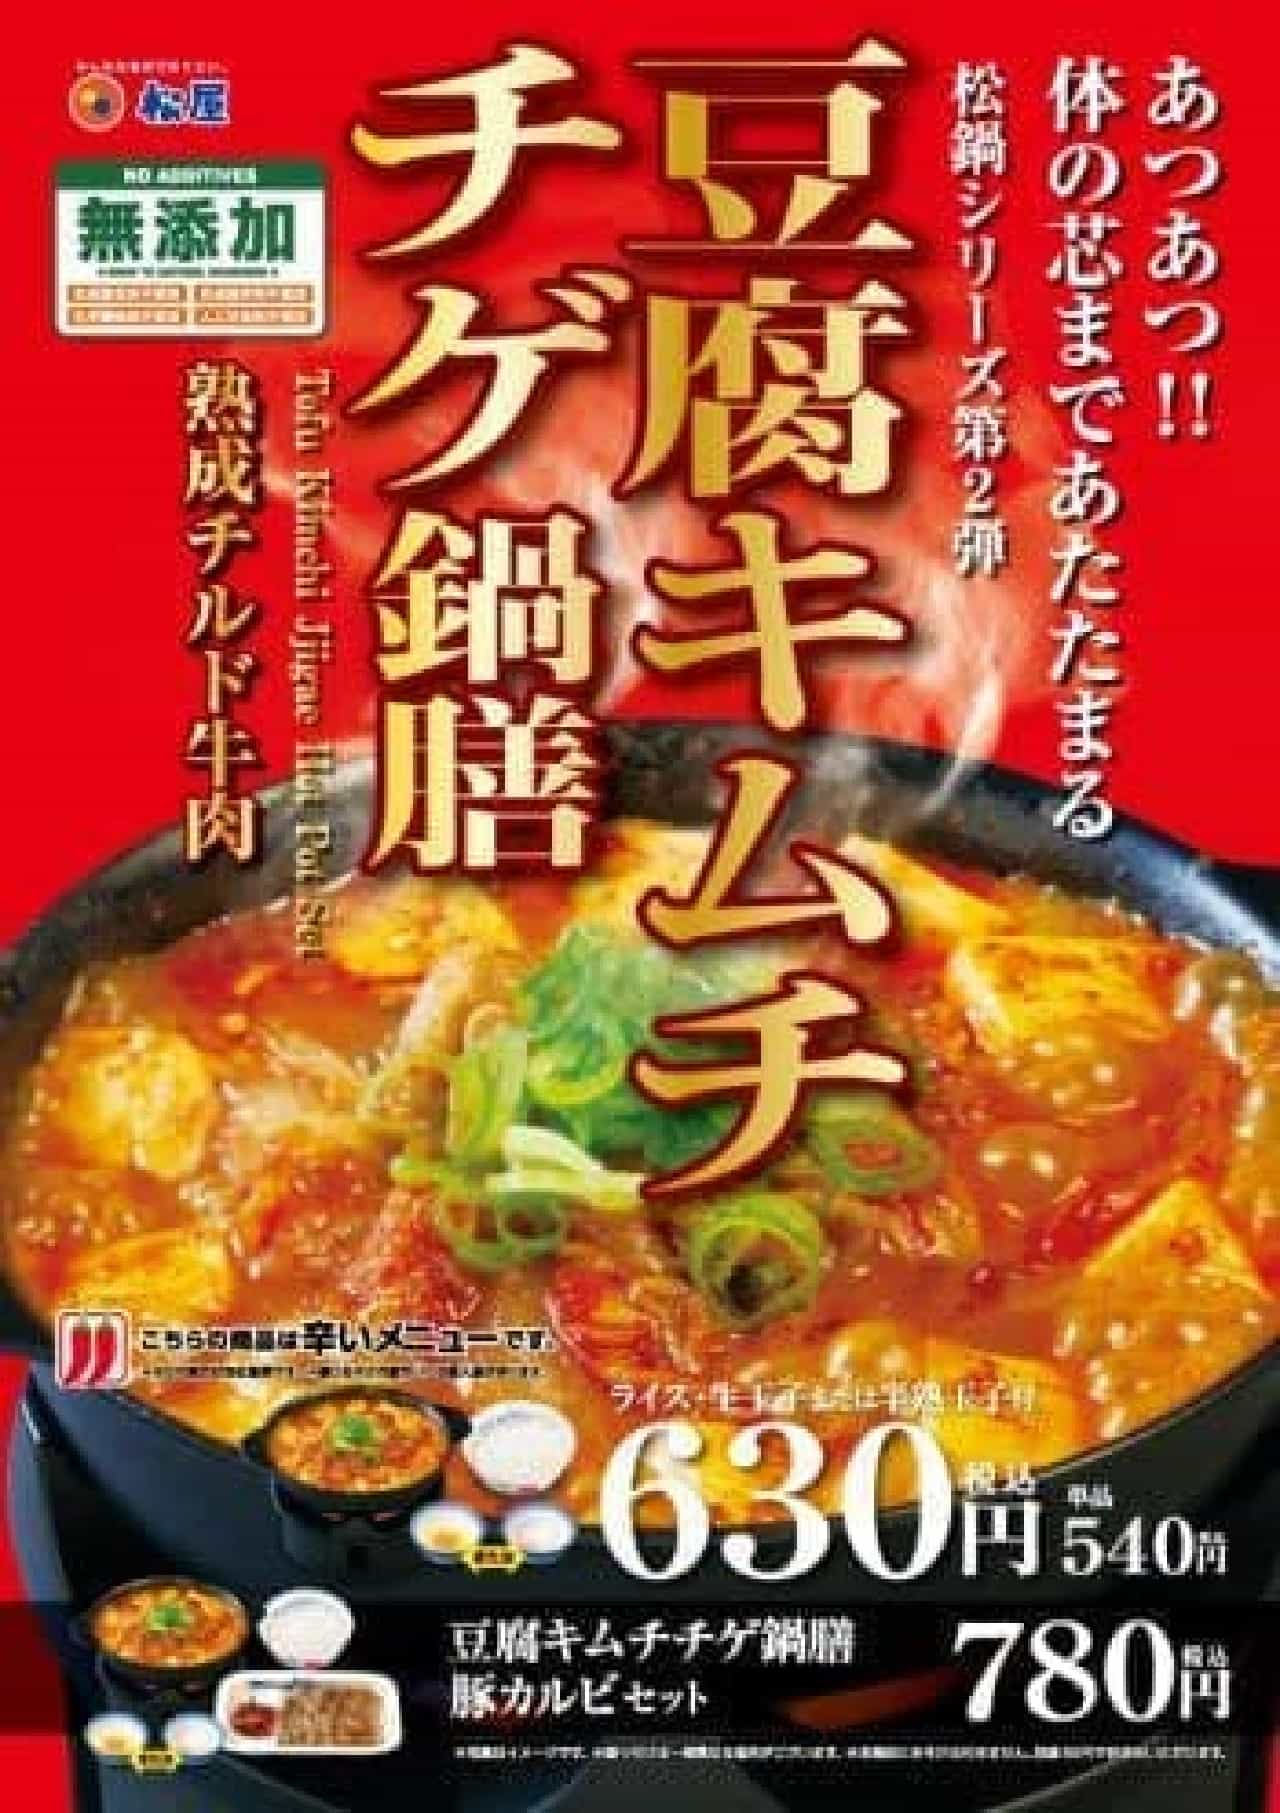 松屋「豆腐キムチチゲ鍋膳」